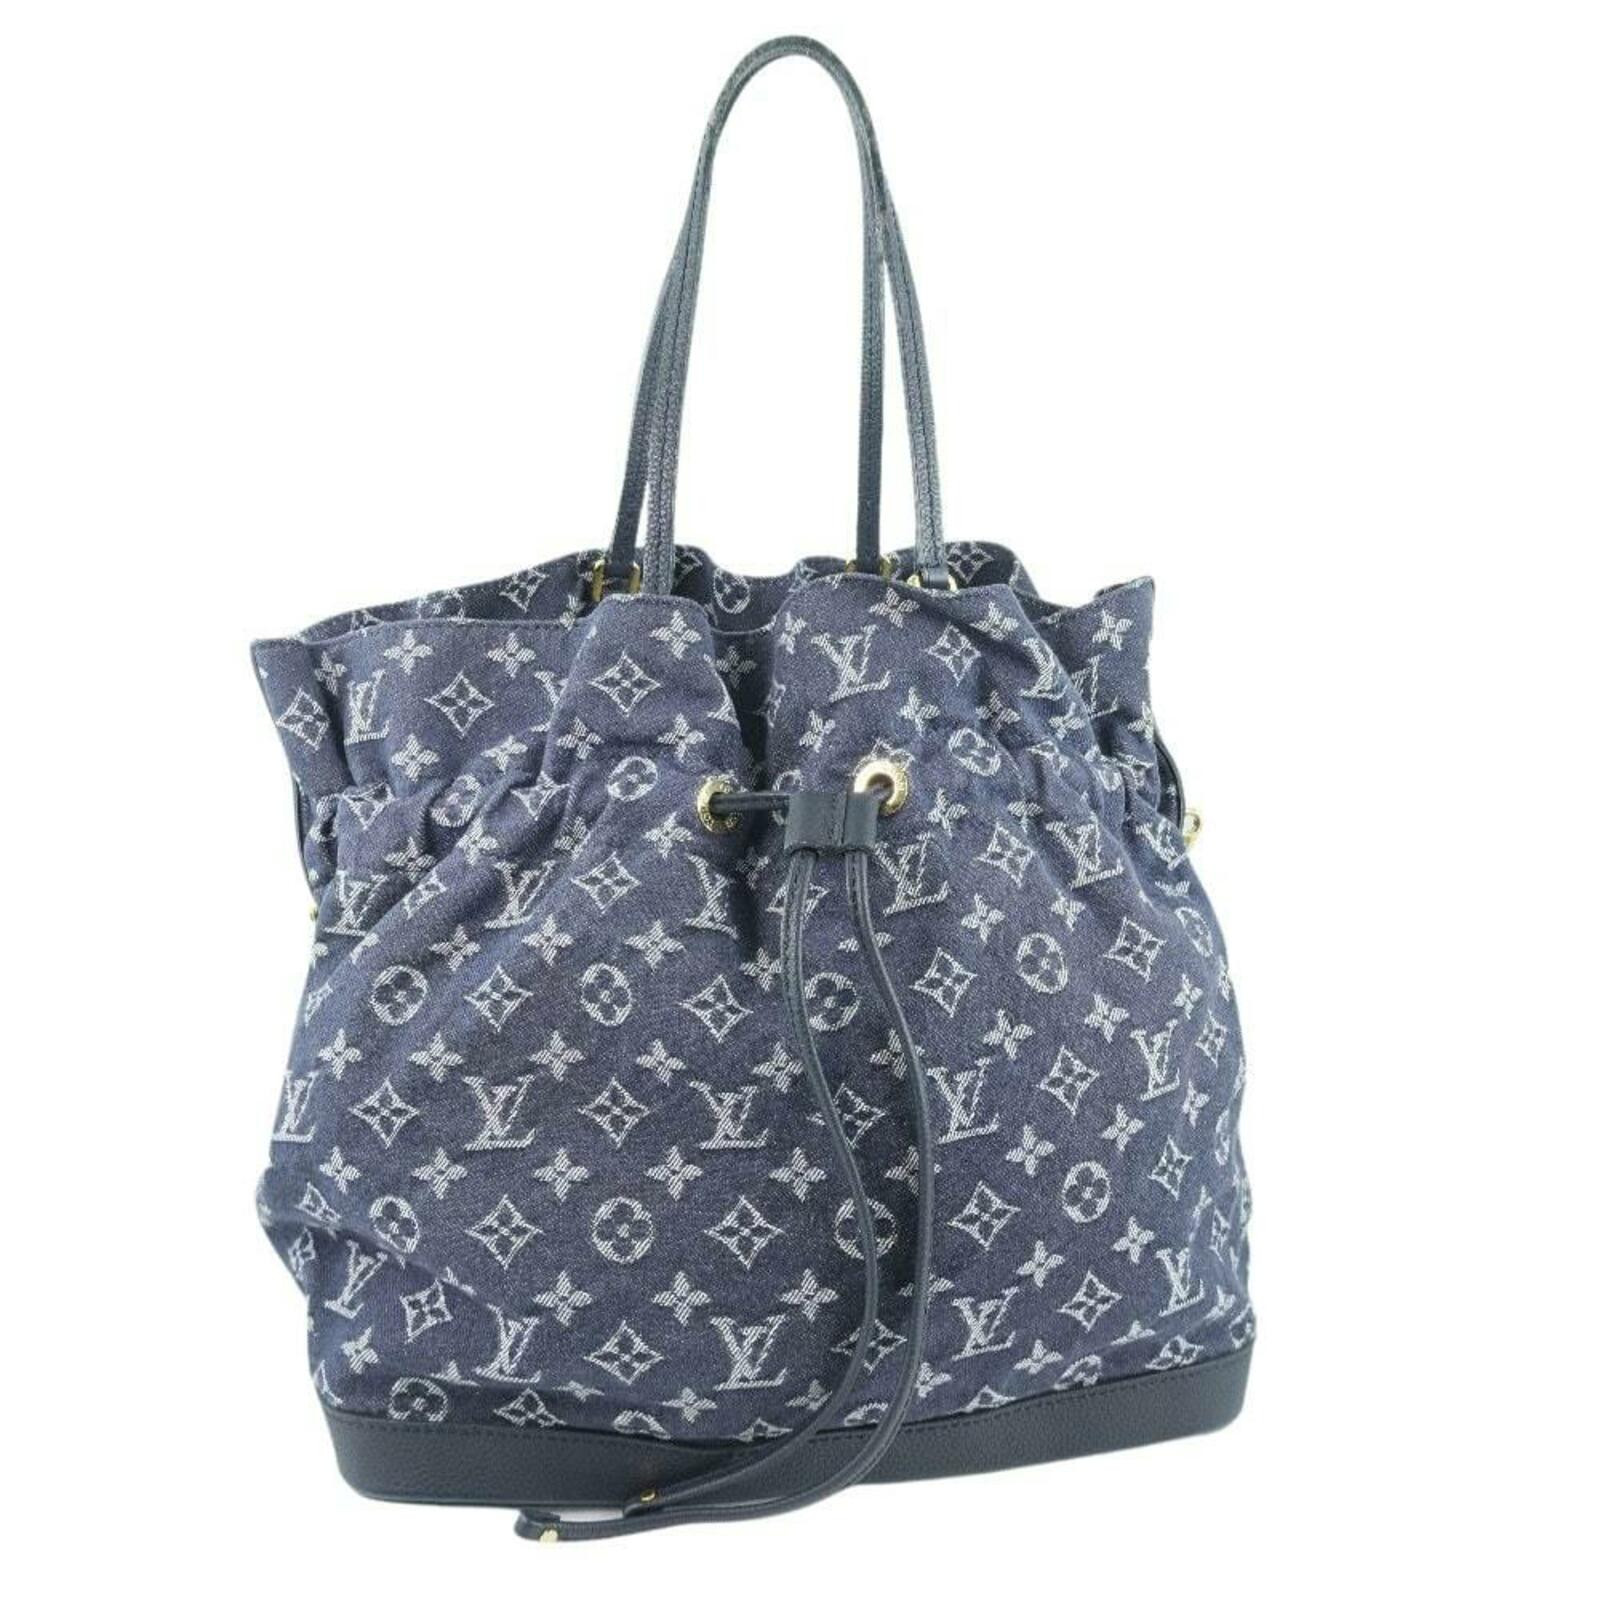 LOUIS VUITTON Women's Handtasche aus Jeansstoff in Blau